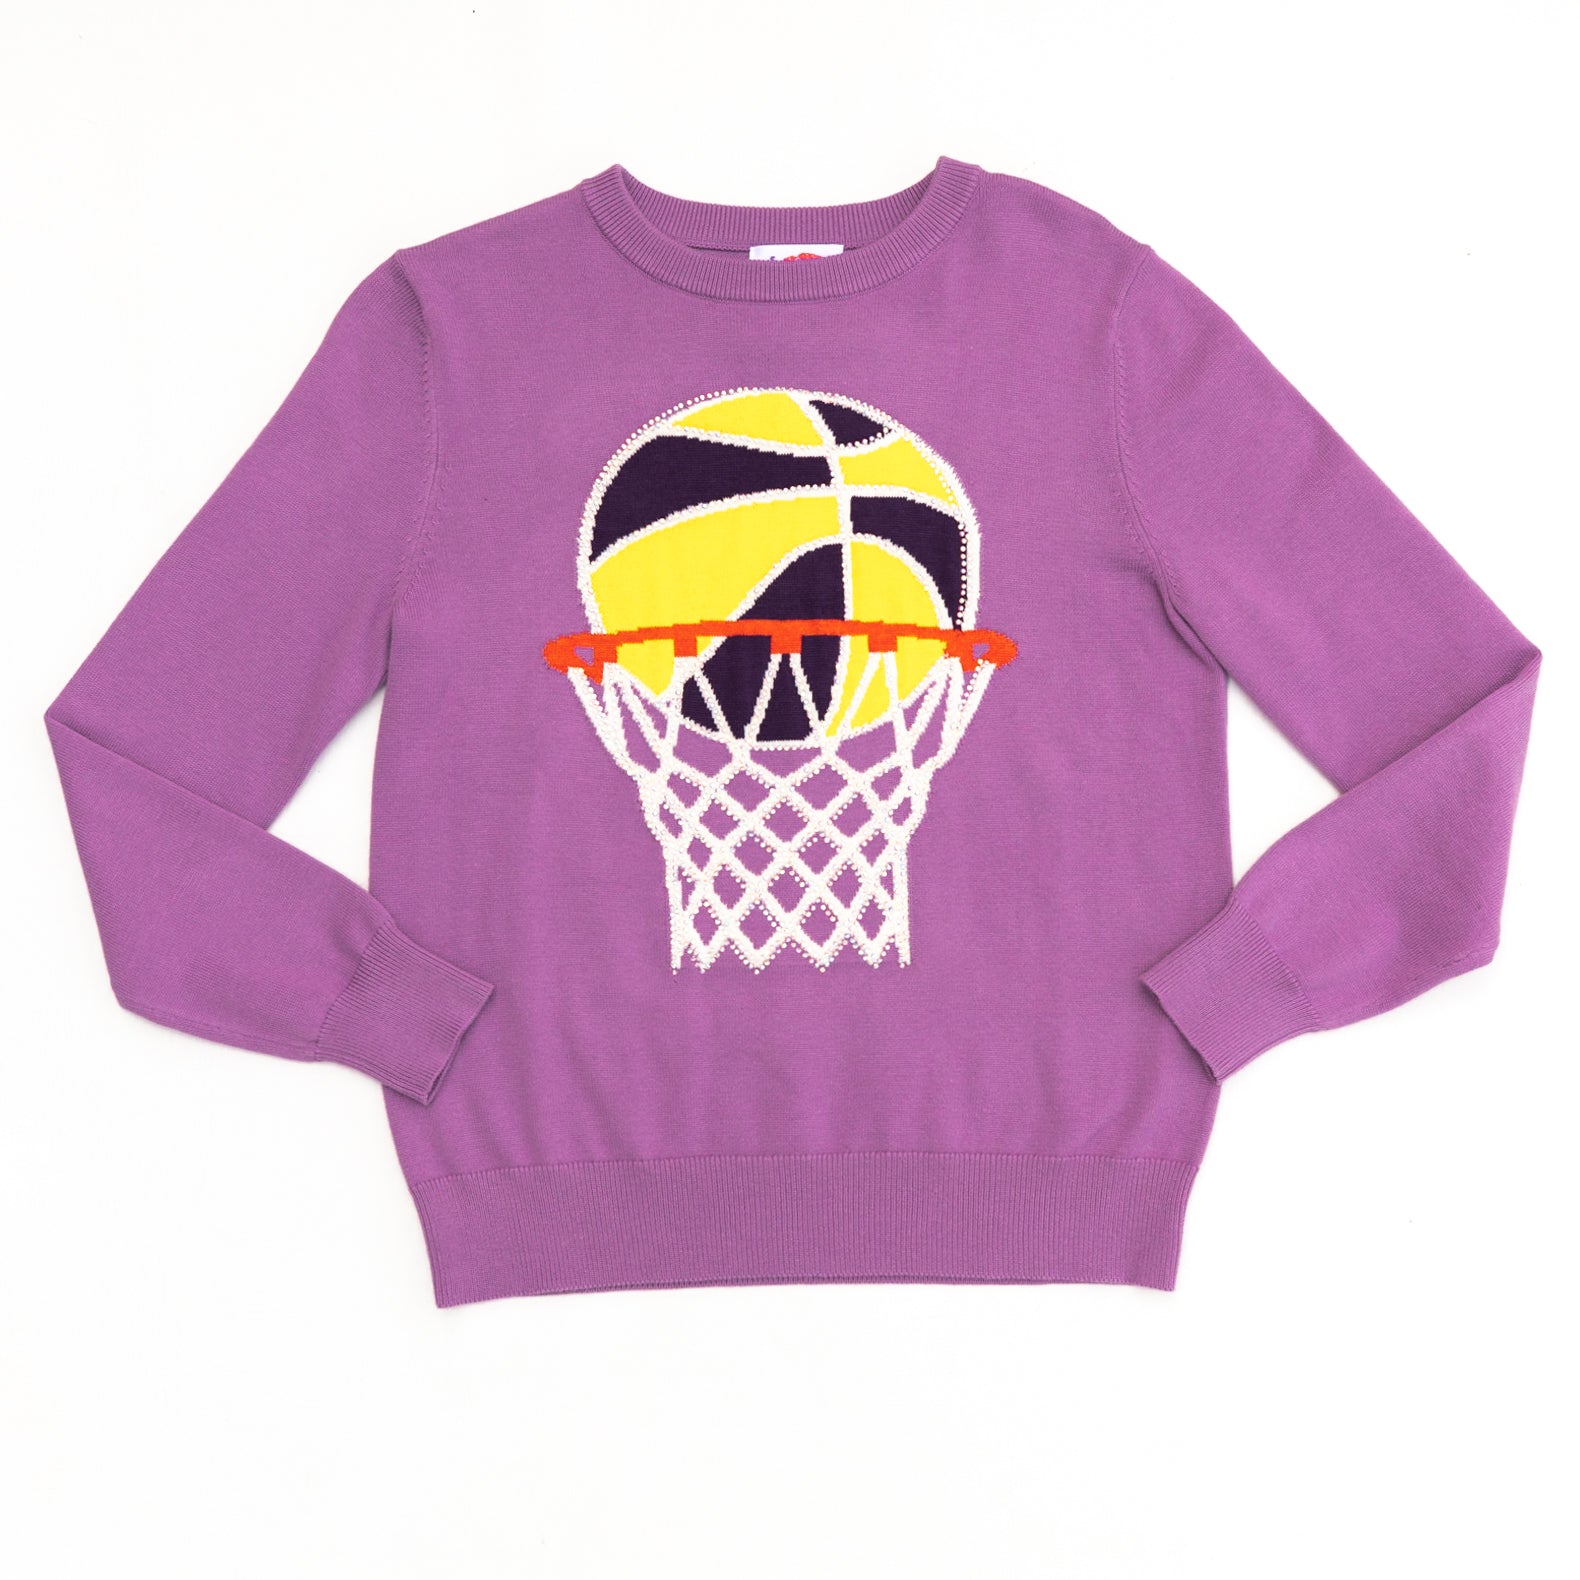 Bling Bling Basketball Sweater Purple/Gold